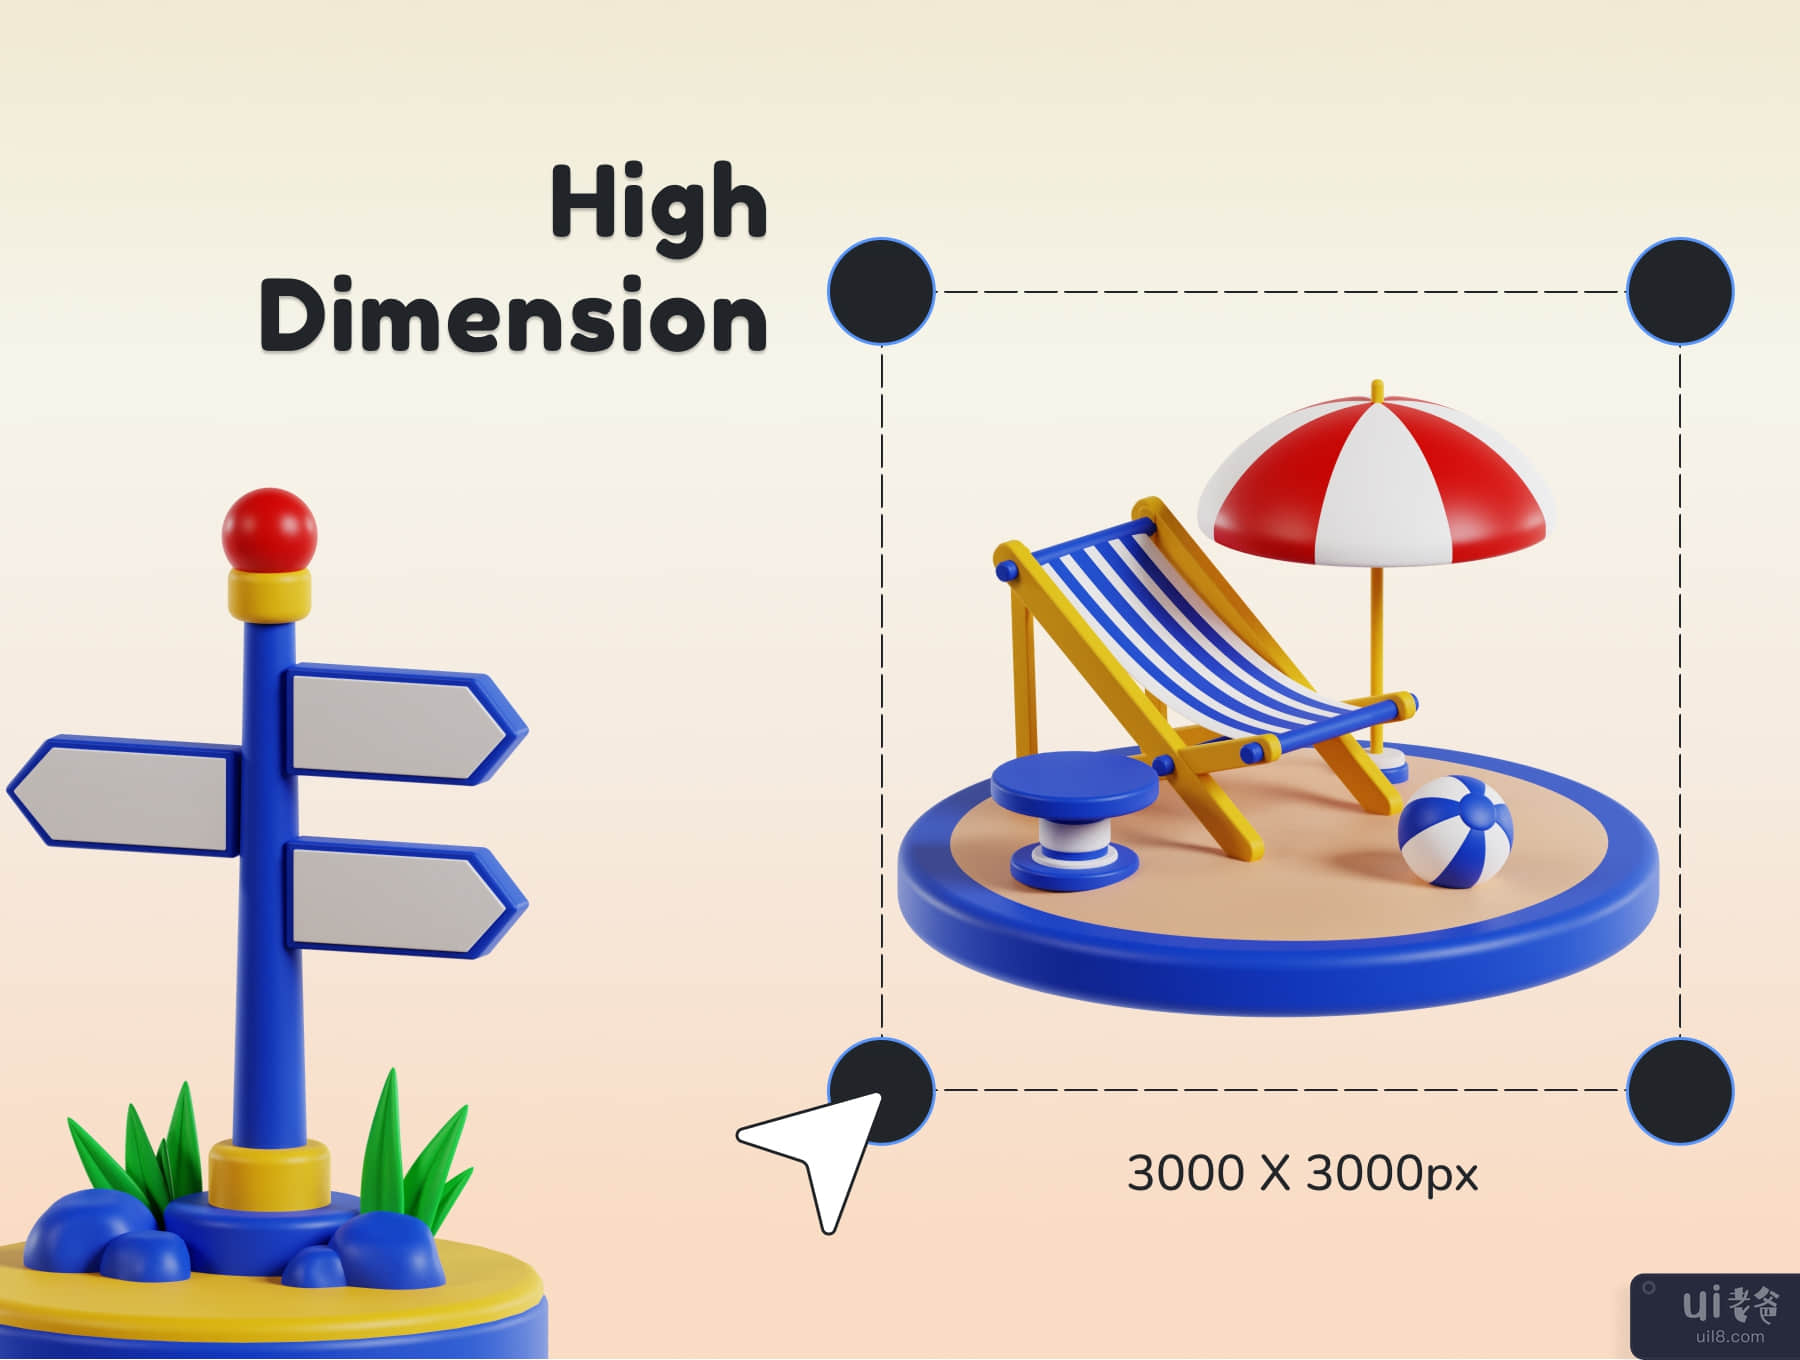 旅行和假日 3D 图标包 (Travel and Holiday 3D Icon Pack)插图4